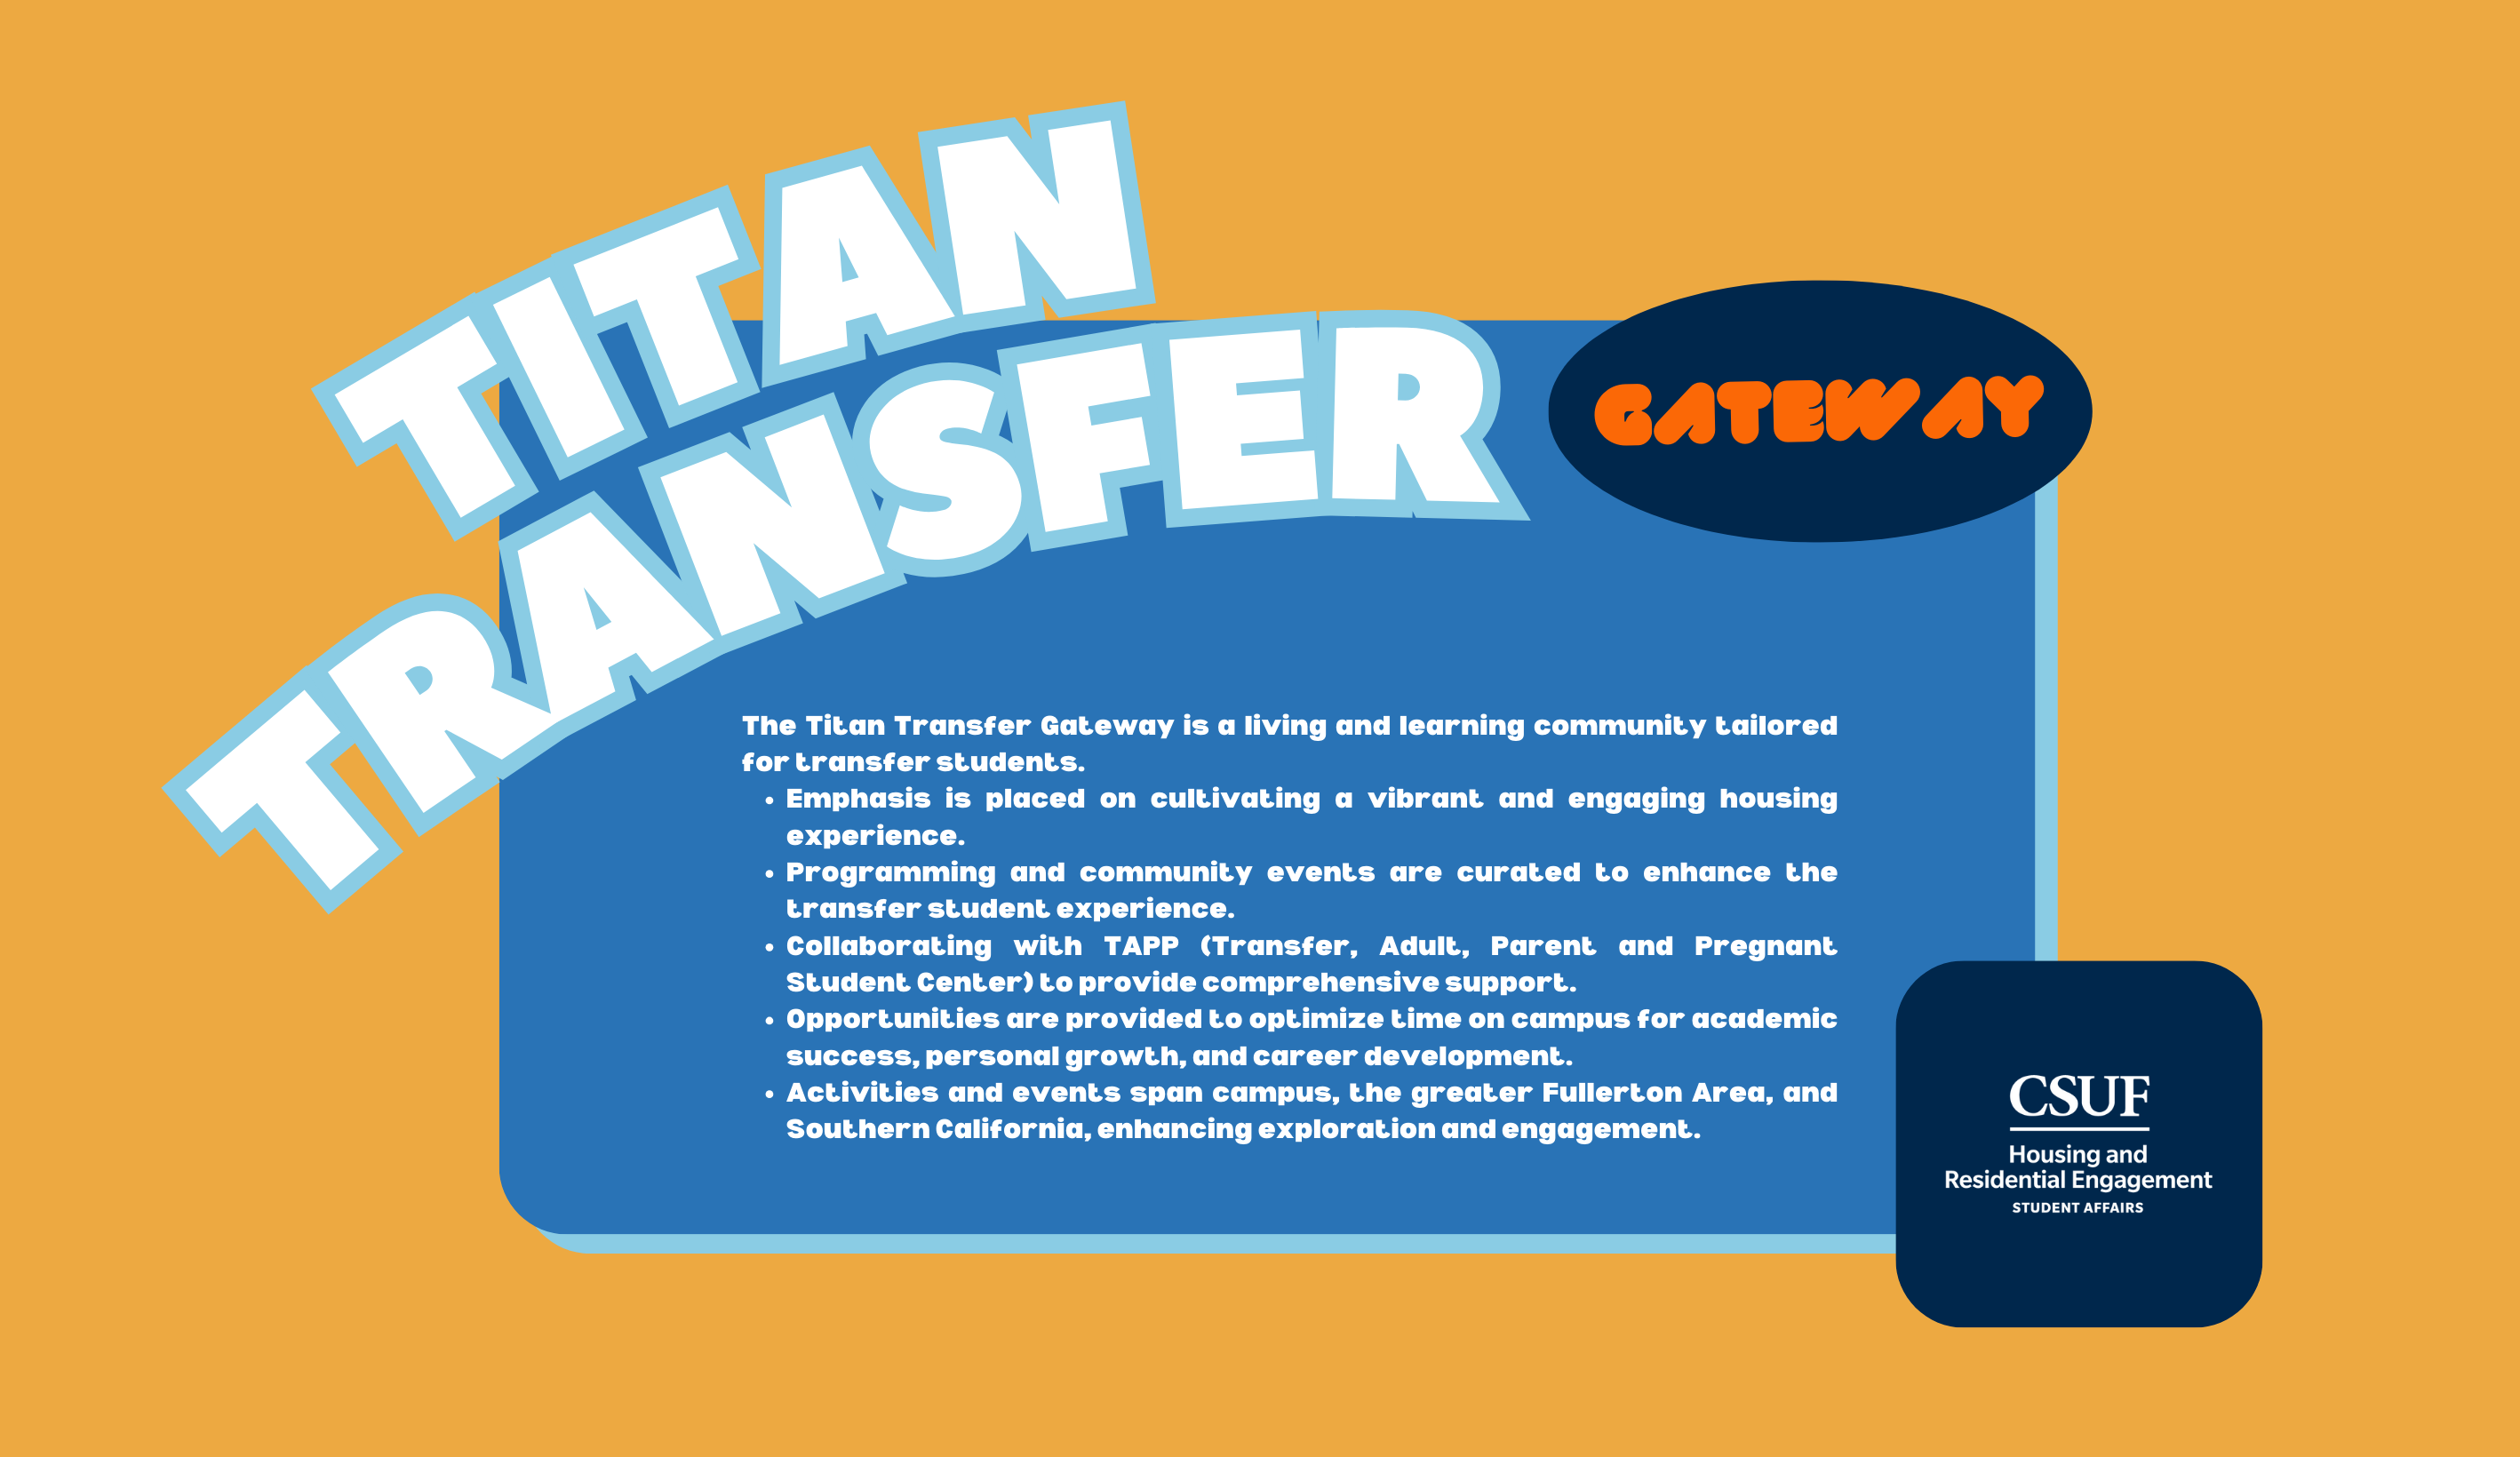 Titan Transfer Gateway